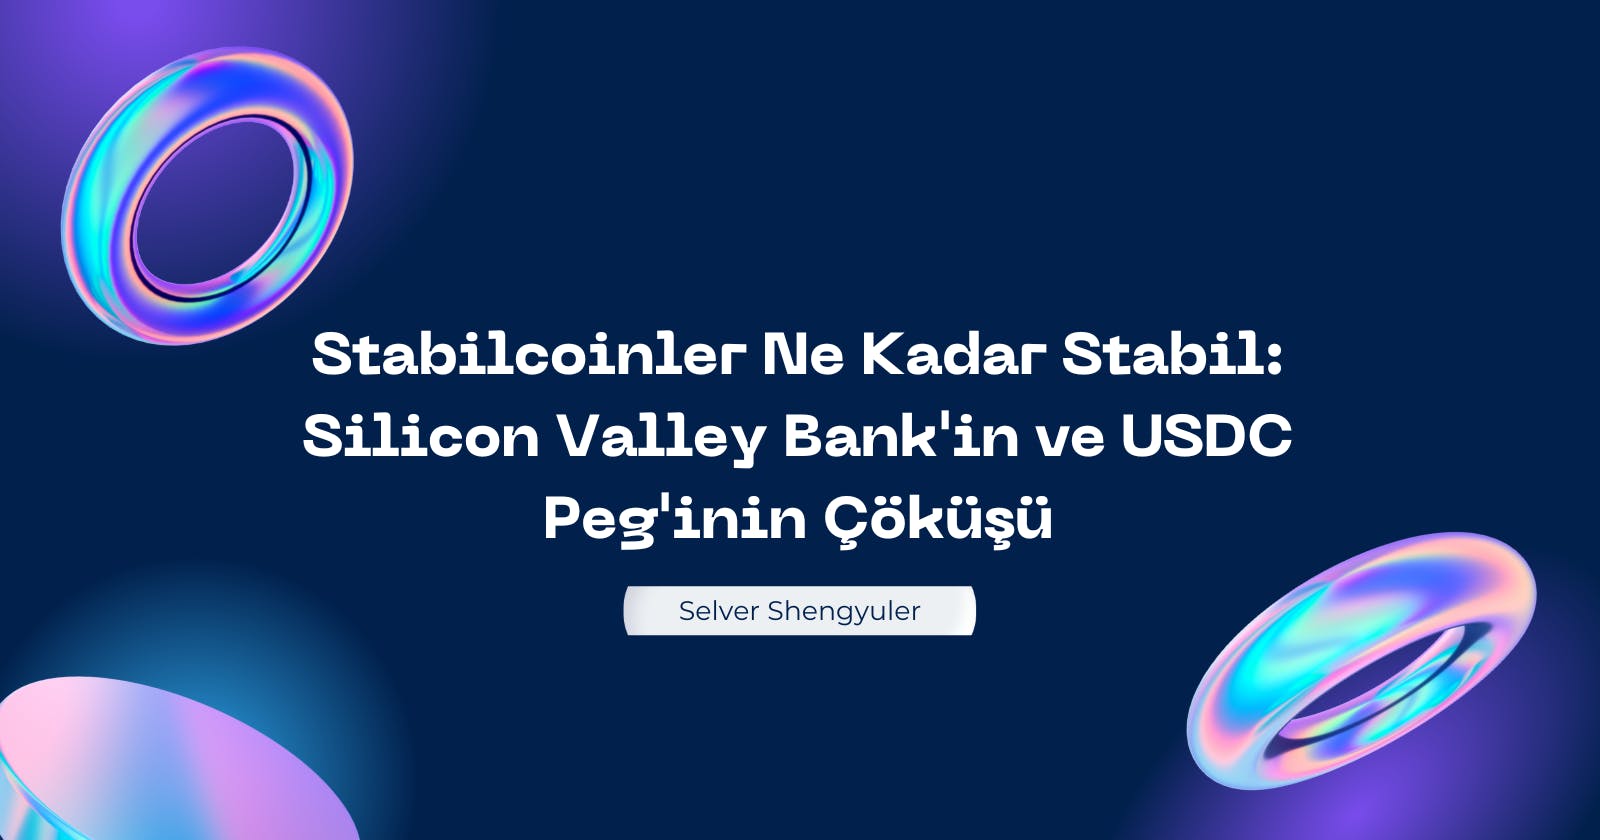 Stabilcoinler Ne Kadar Stabil: Silicon Valley Bank'in ve USDC Peg'inin Çöküşü